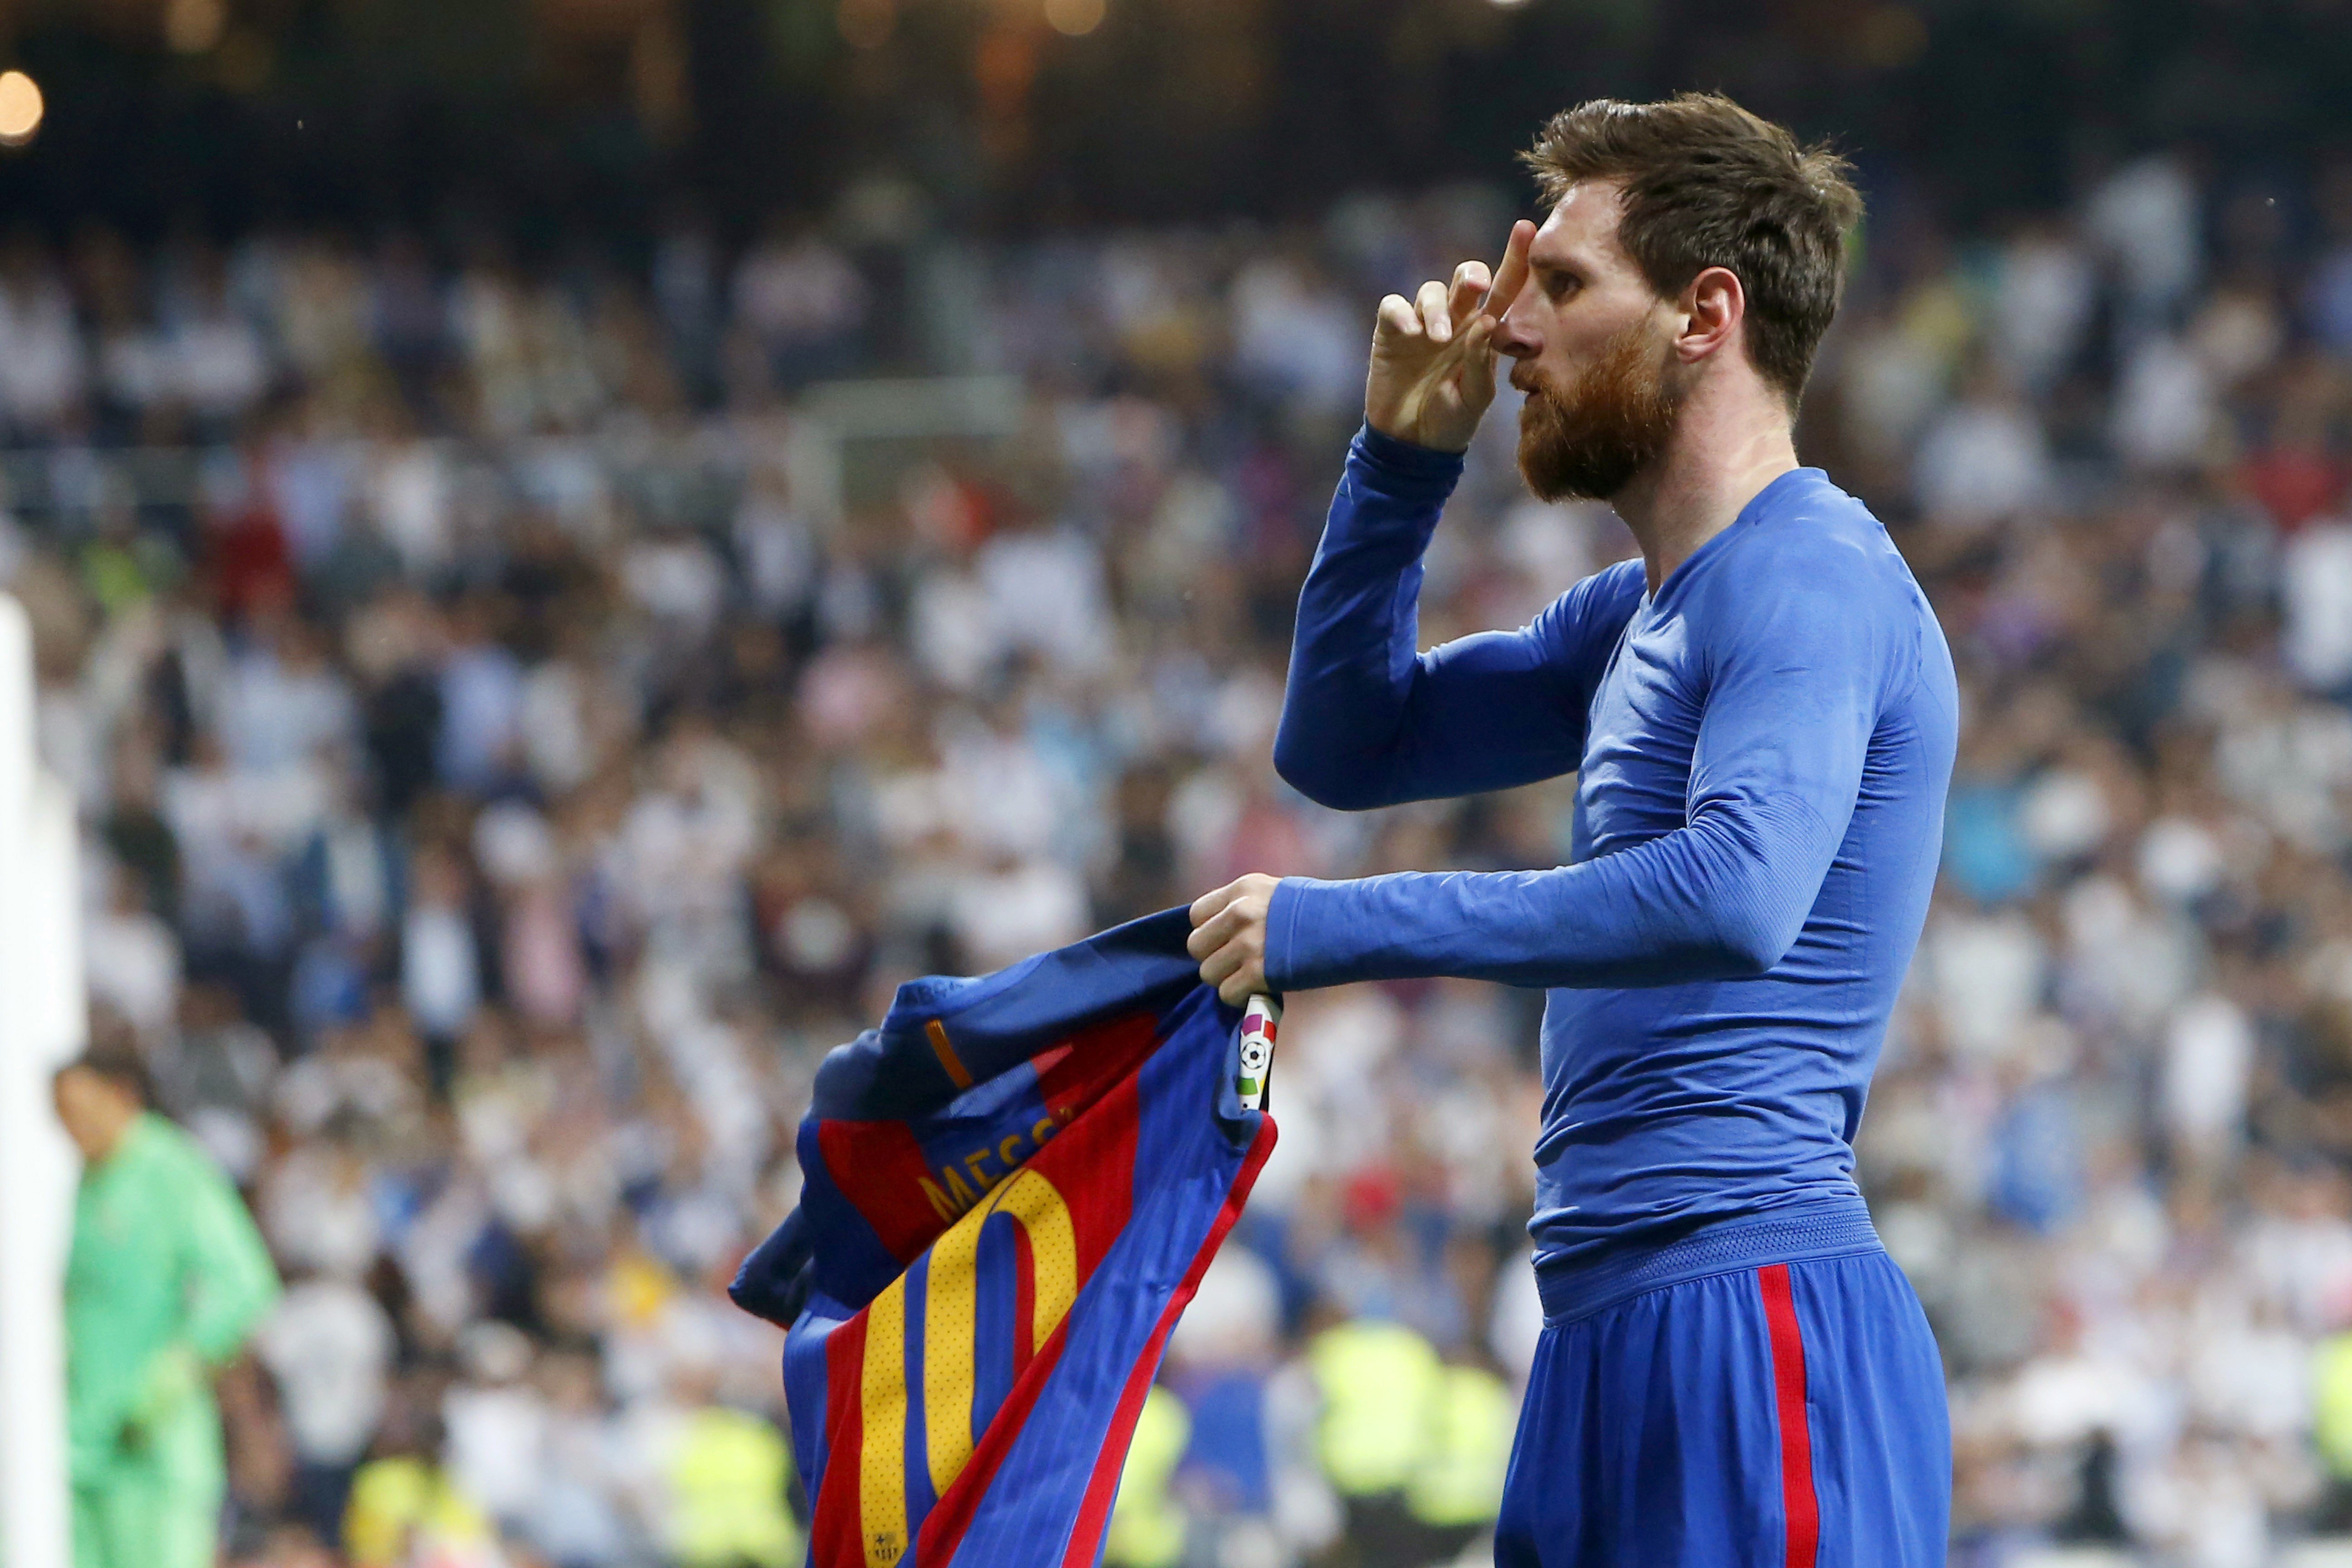 El Madrid pone a prueba al Barça de Valverde y Messi